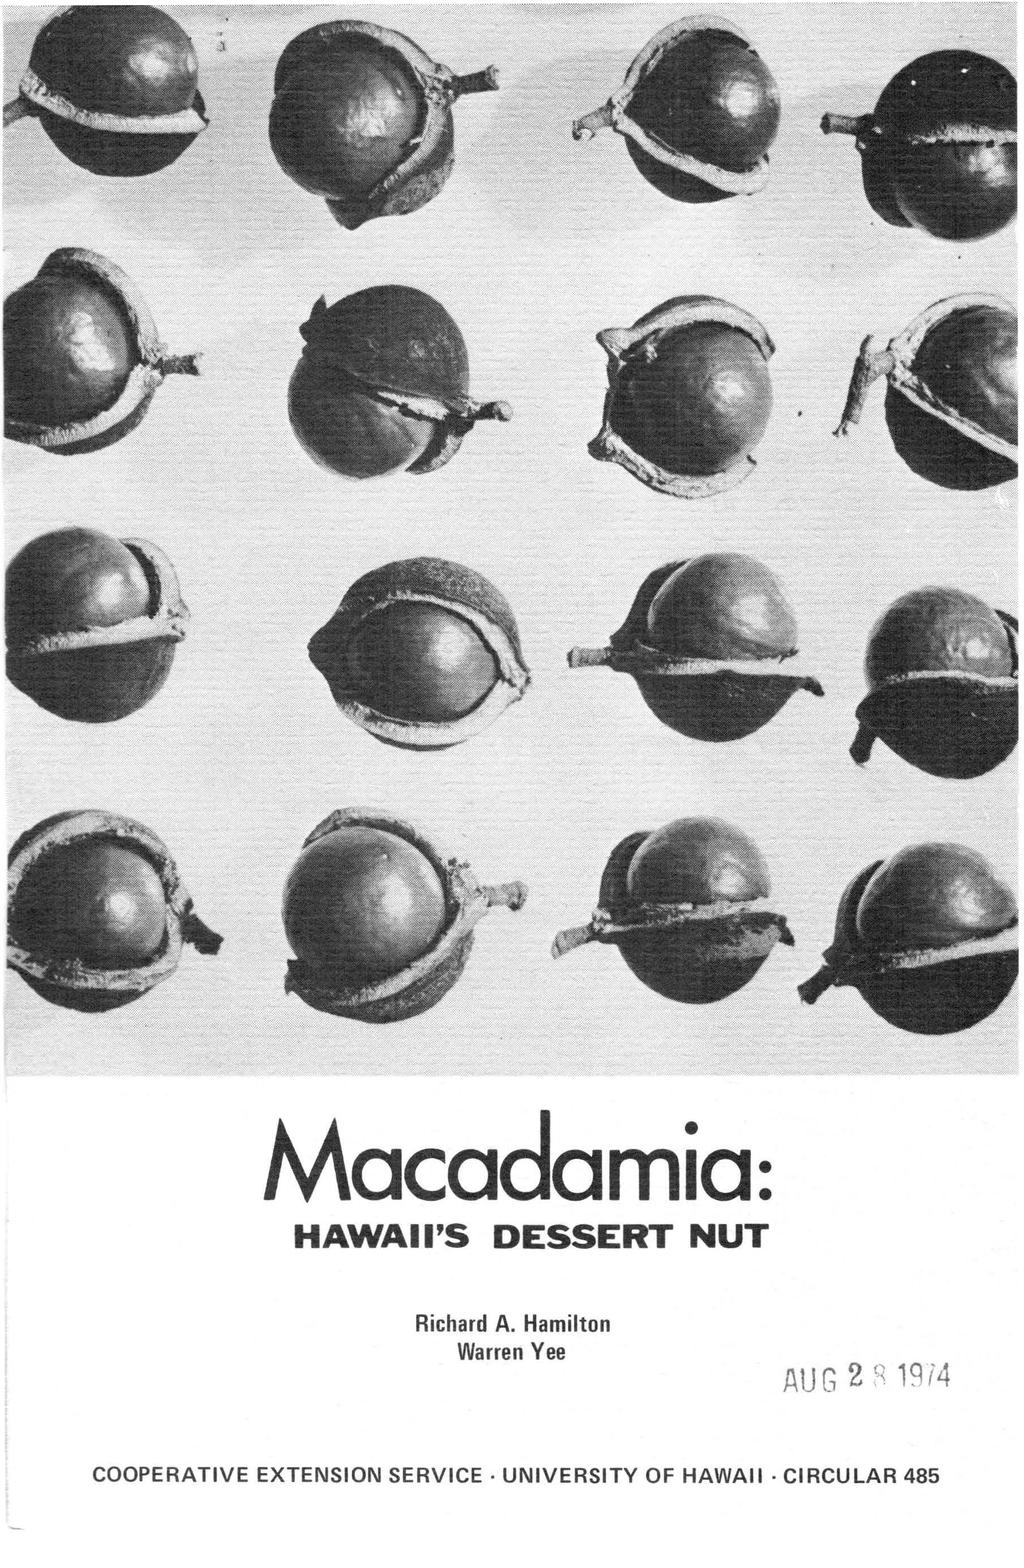 Macadamia: HAWAII'S DESSERT NUT Richard A.